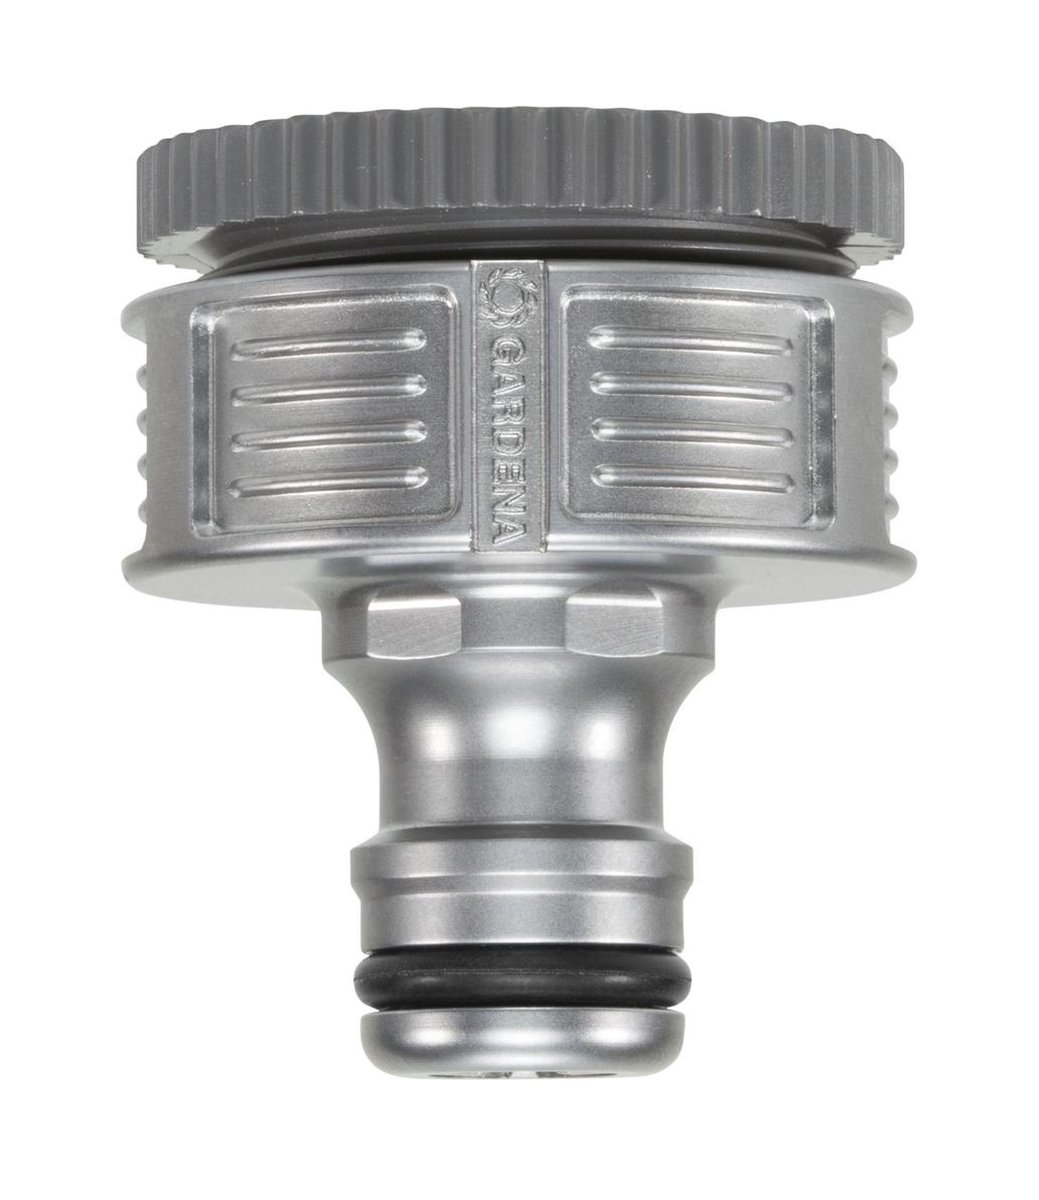 G 3/4 pouce Gardena professionnel système Robinet : raccord de robinet pour robinets avec filetage 26,5 mm 2801-20 raccord de robinet pour un débit d'eau plus élevé 